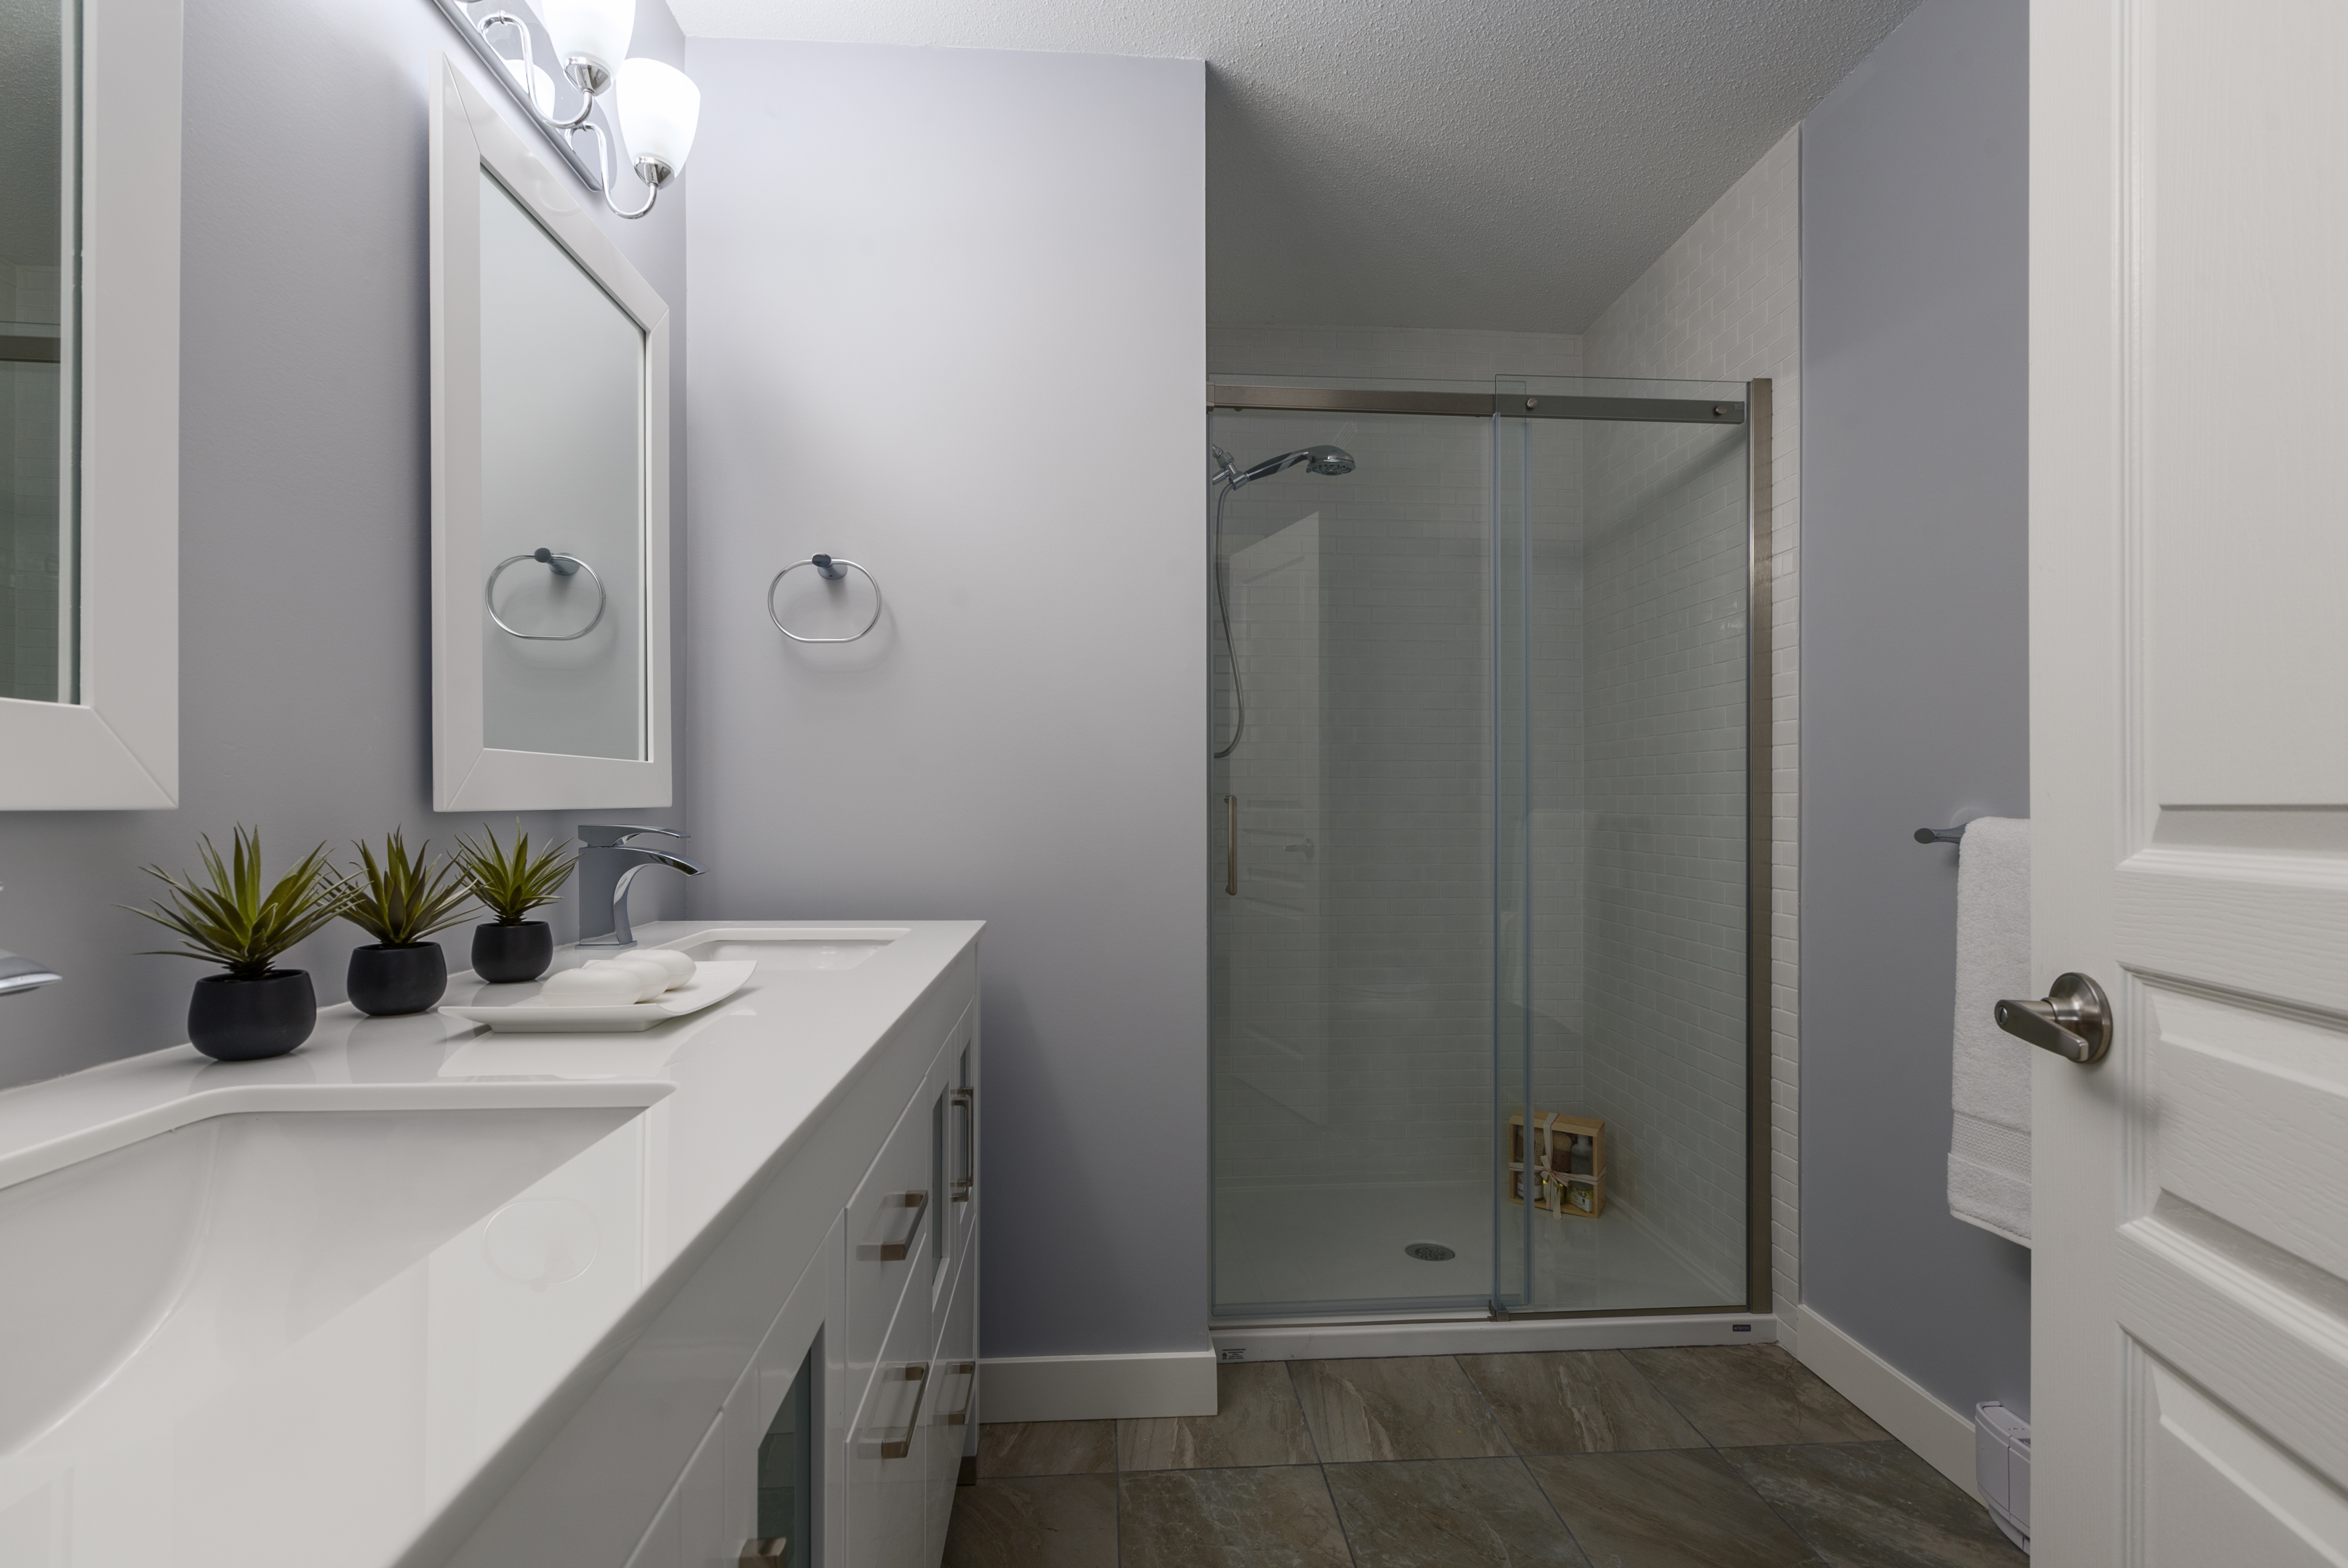 bathroom after home renovation crest - home renovations vancouver - flipside homes